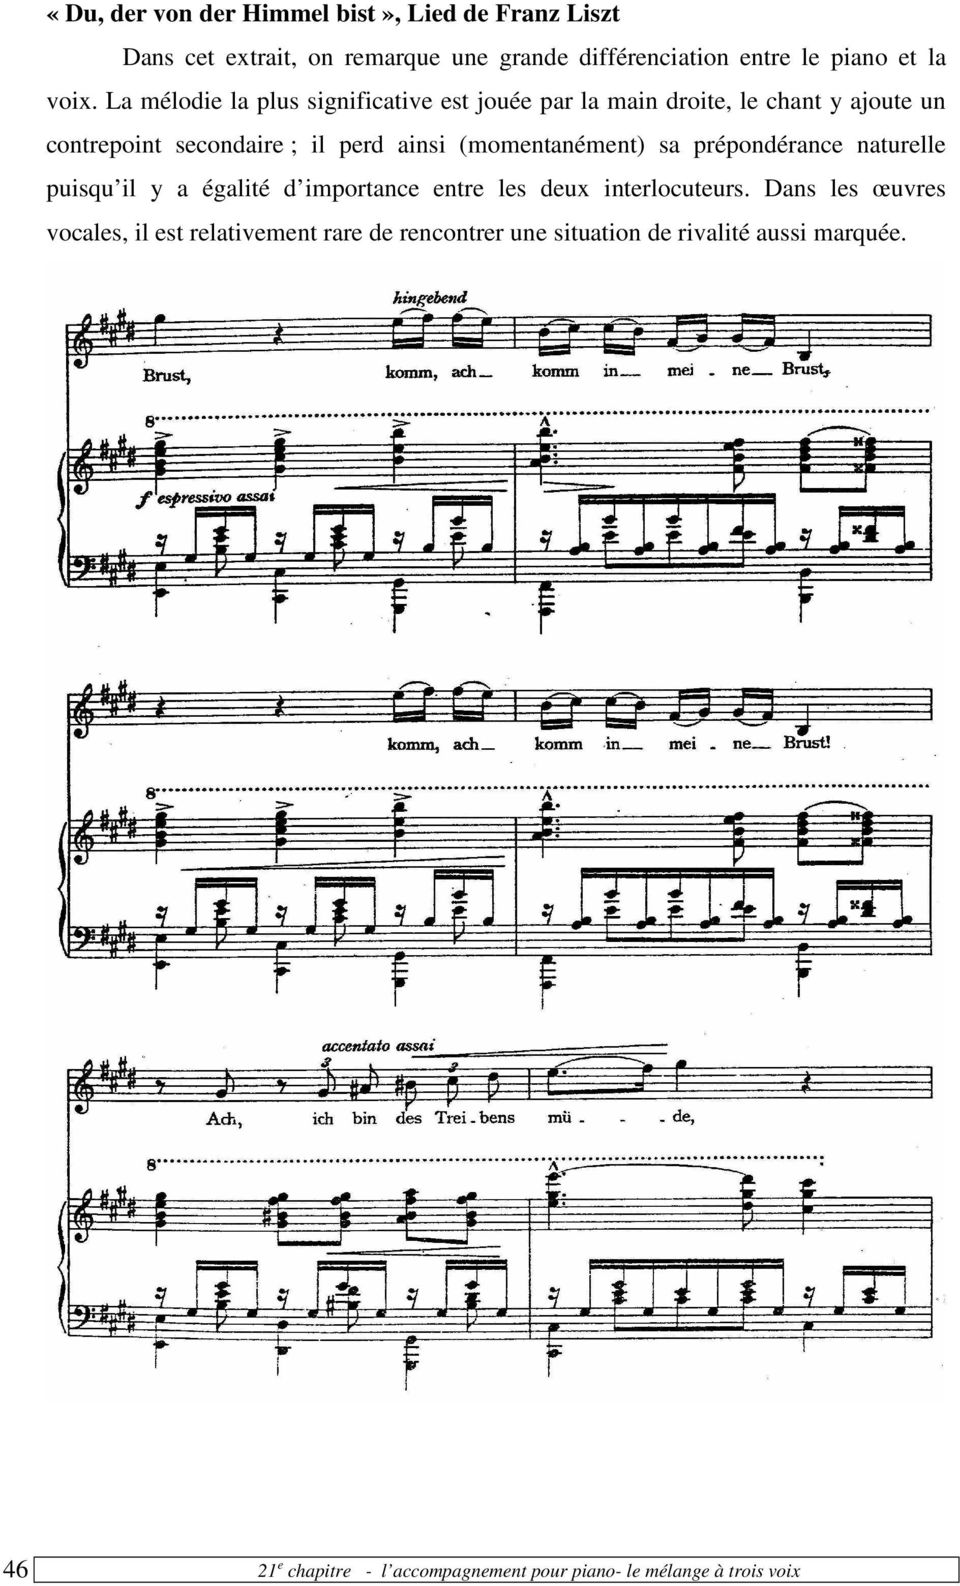 La mélodie la plus significative est jouée par la main droite, le chant y ajoute un contrepoint secondaire ; il perd